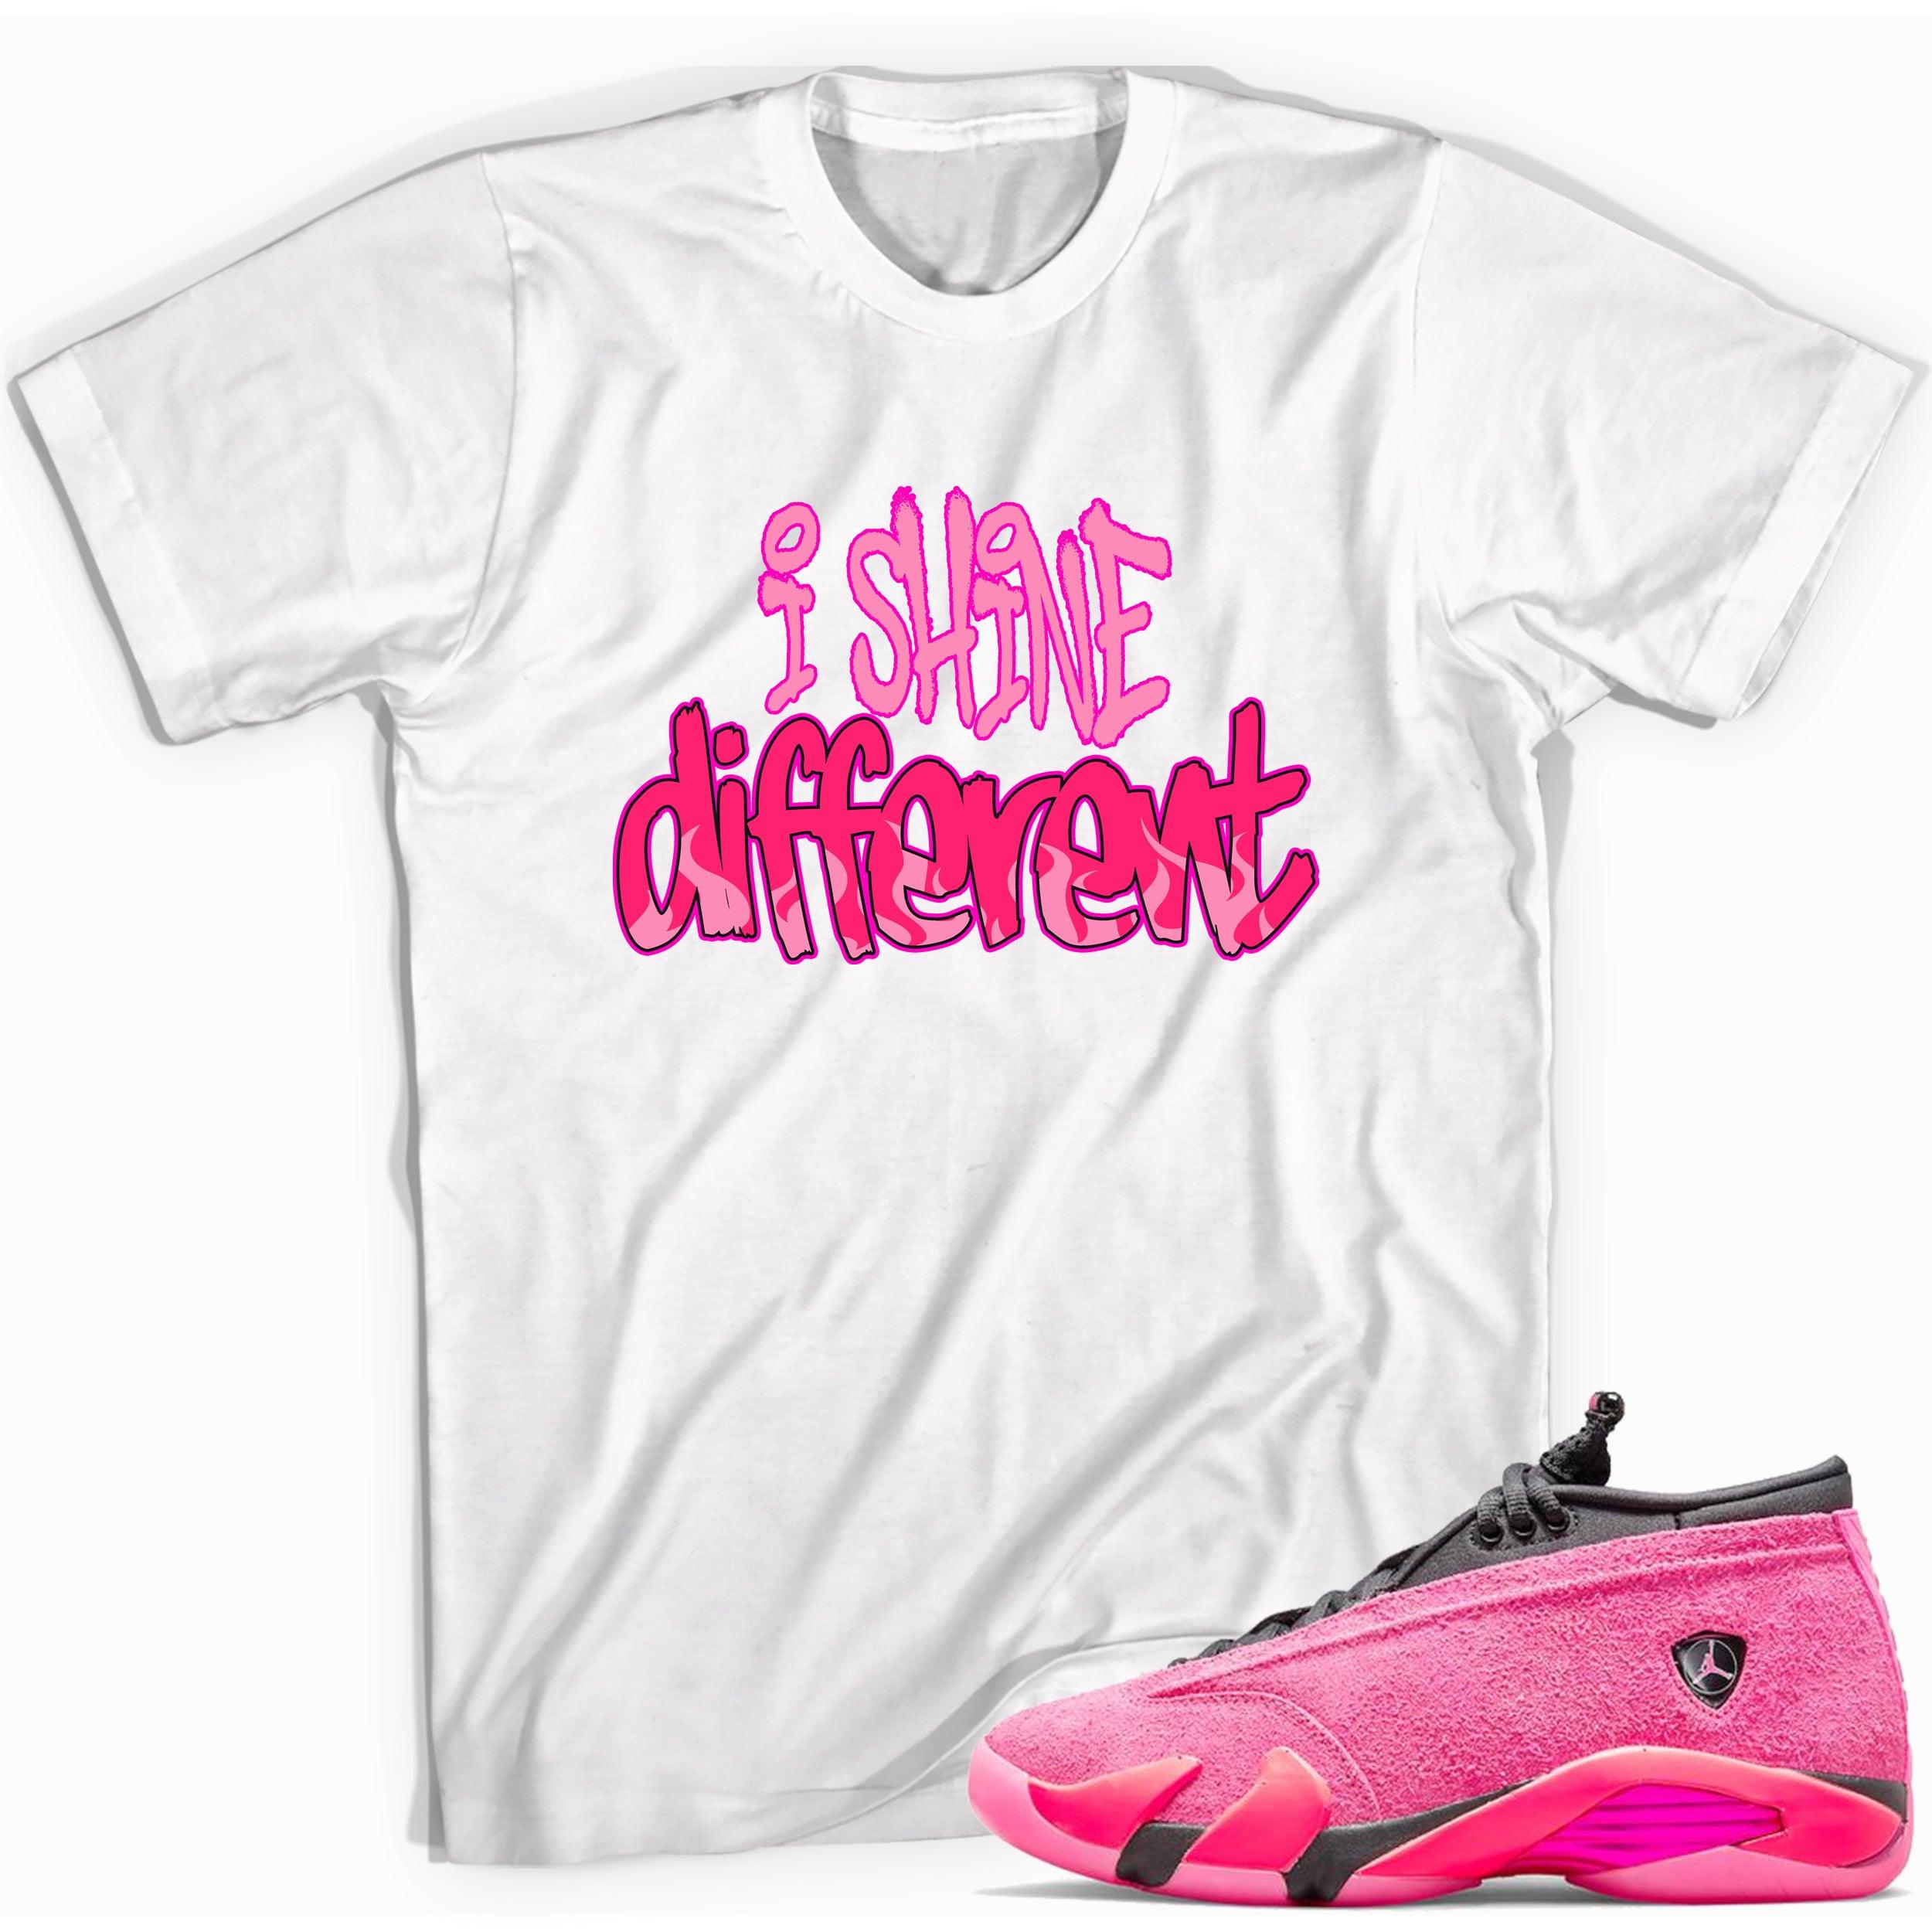 Shine Different Shirt Jordan 14s Low Shocking Pink photo